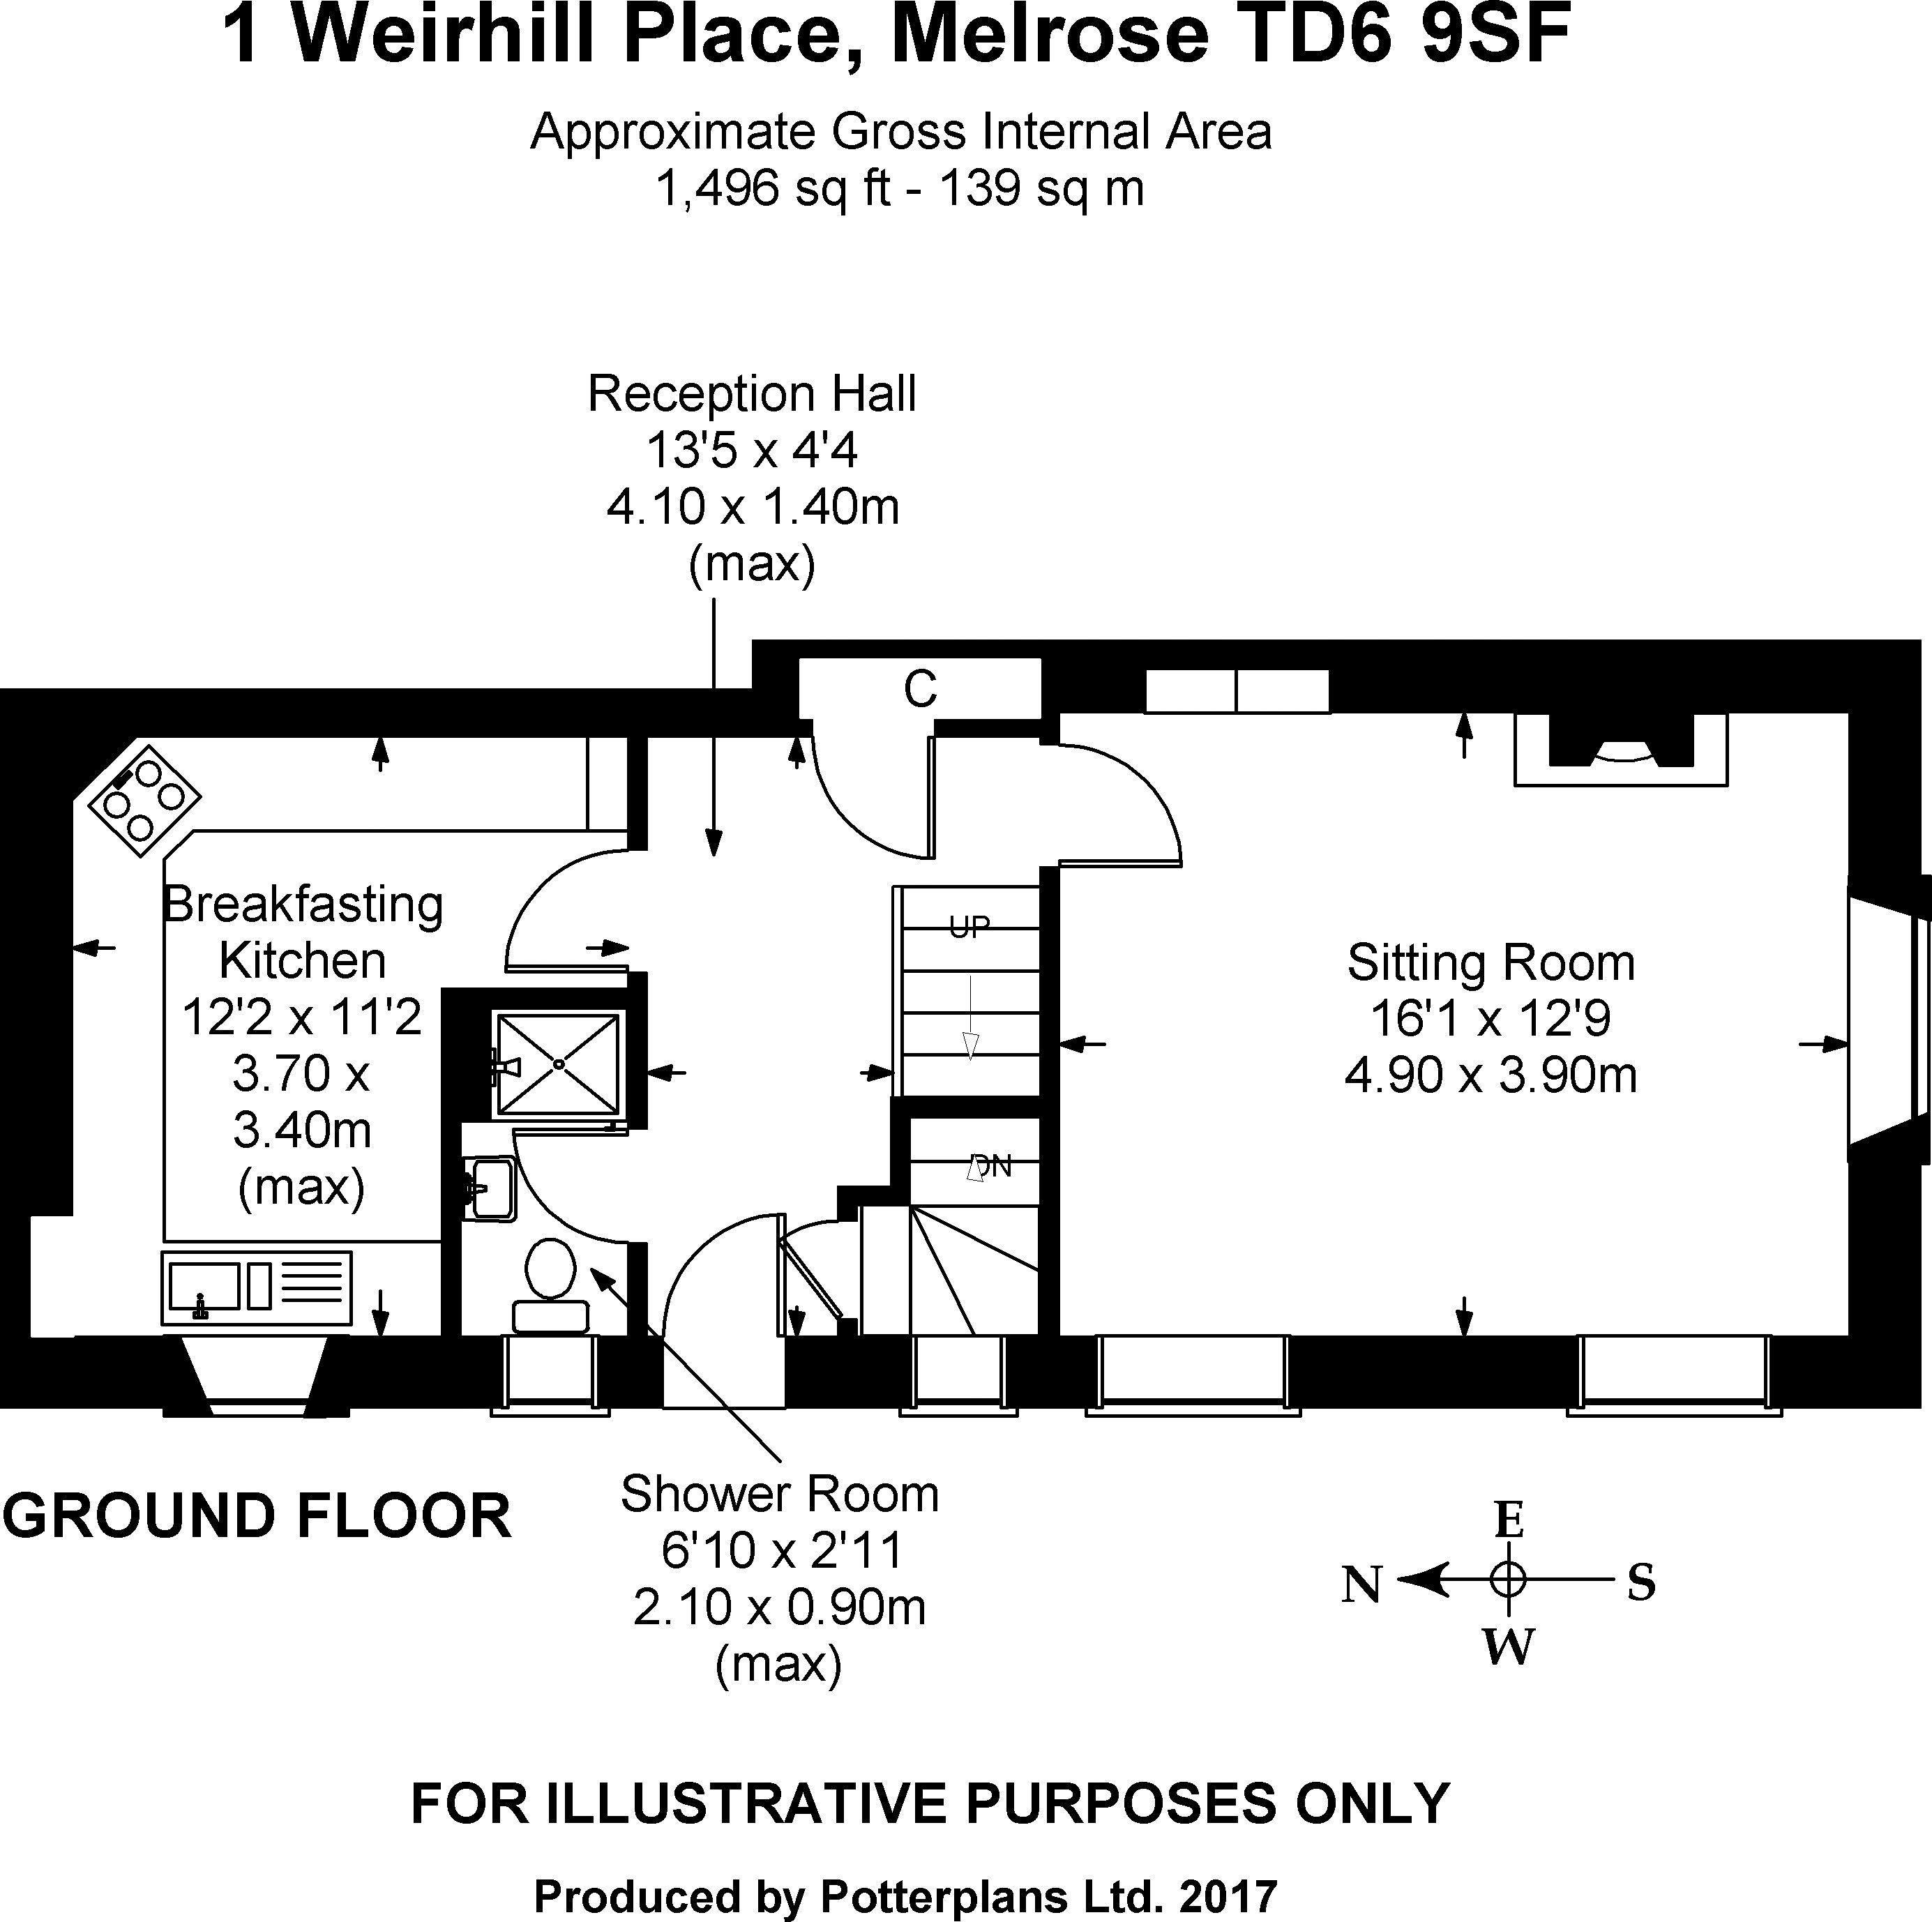 1 Weirhill Place Ground Floor